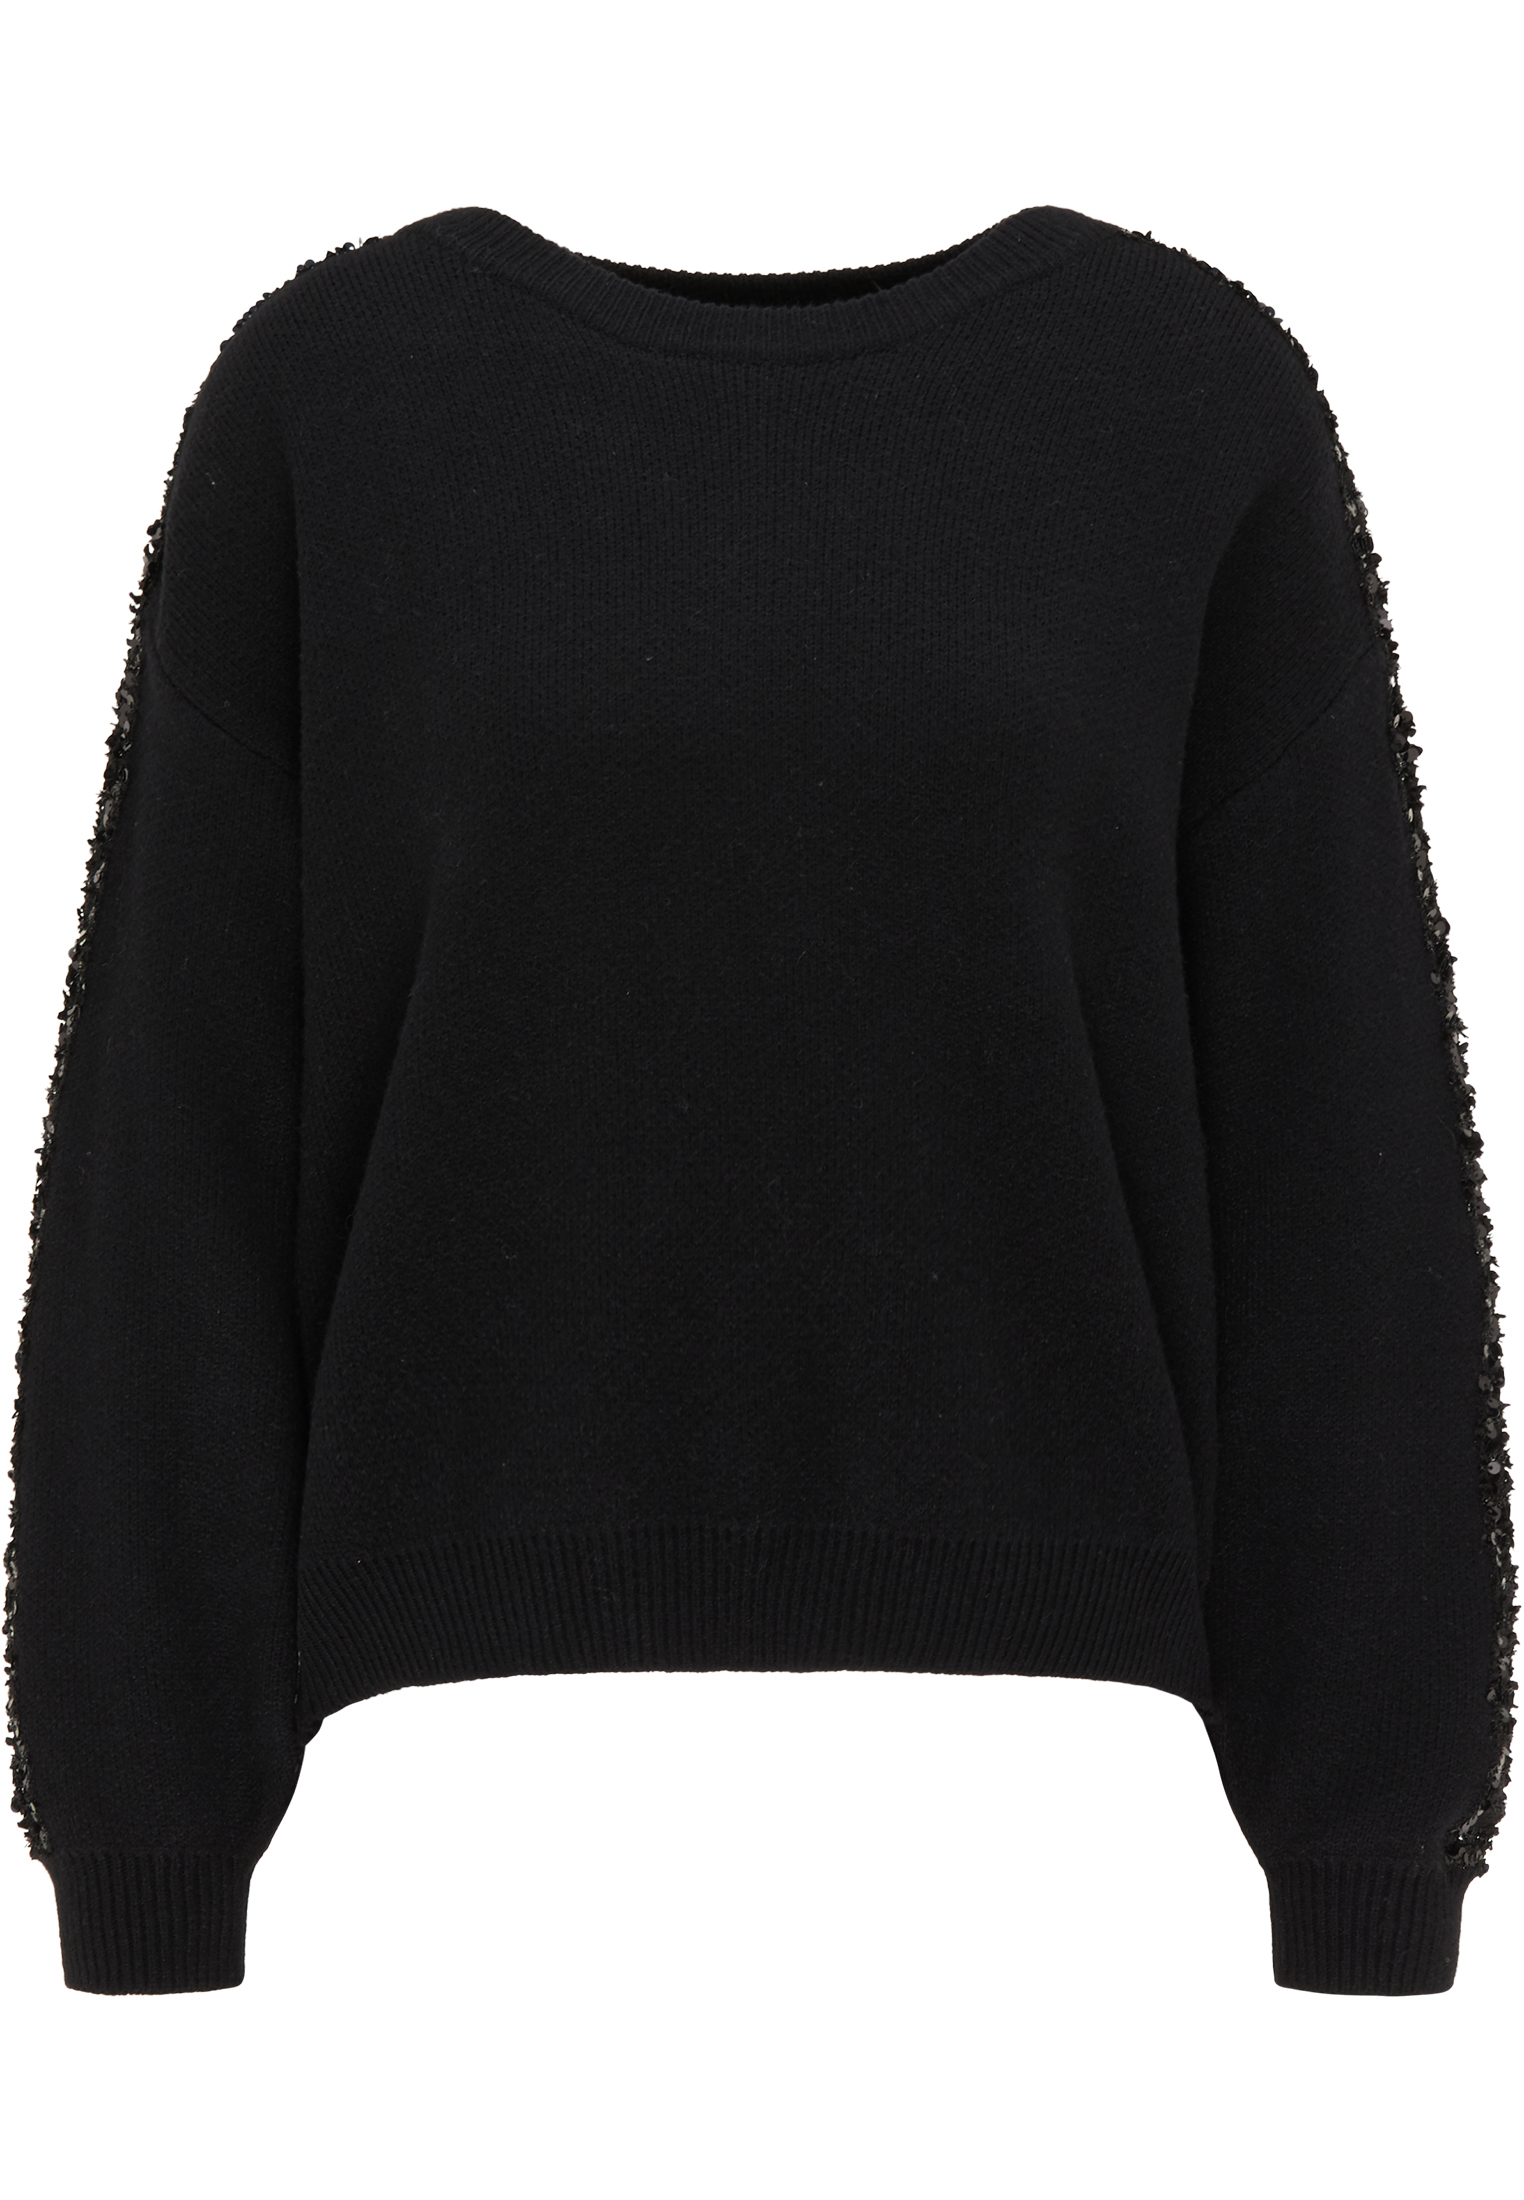 Odzież Swetry & dzianina faina Sweter w kolorze Czarnym 